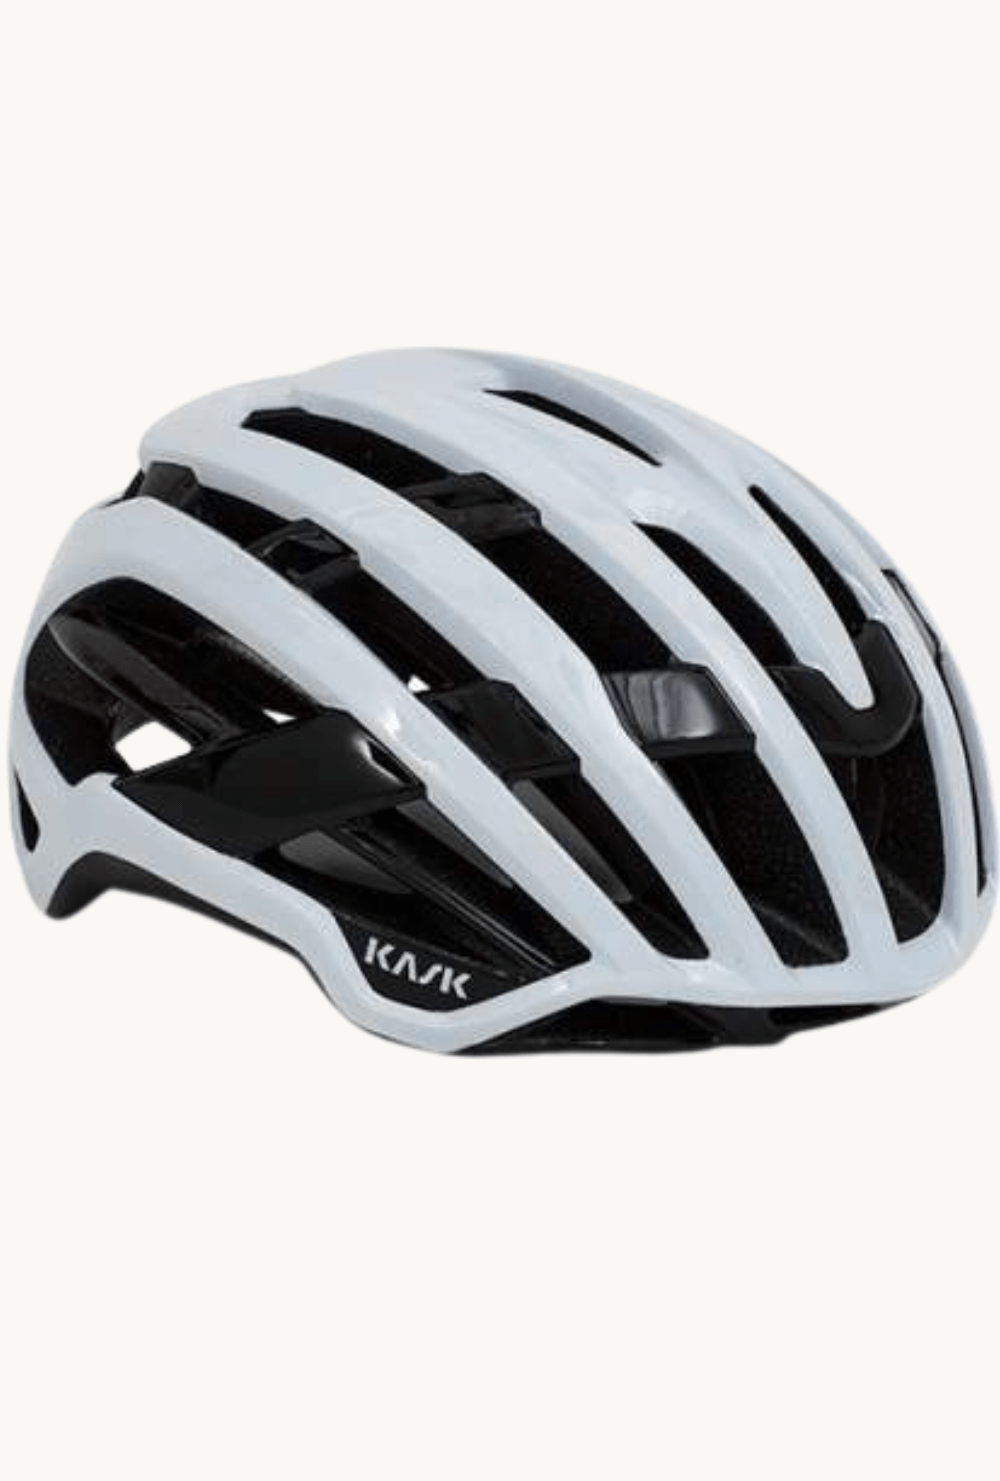 Helmet - Kask Valegro Whitesmall / White